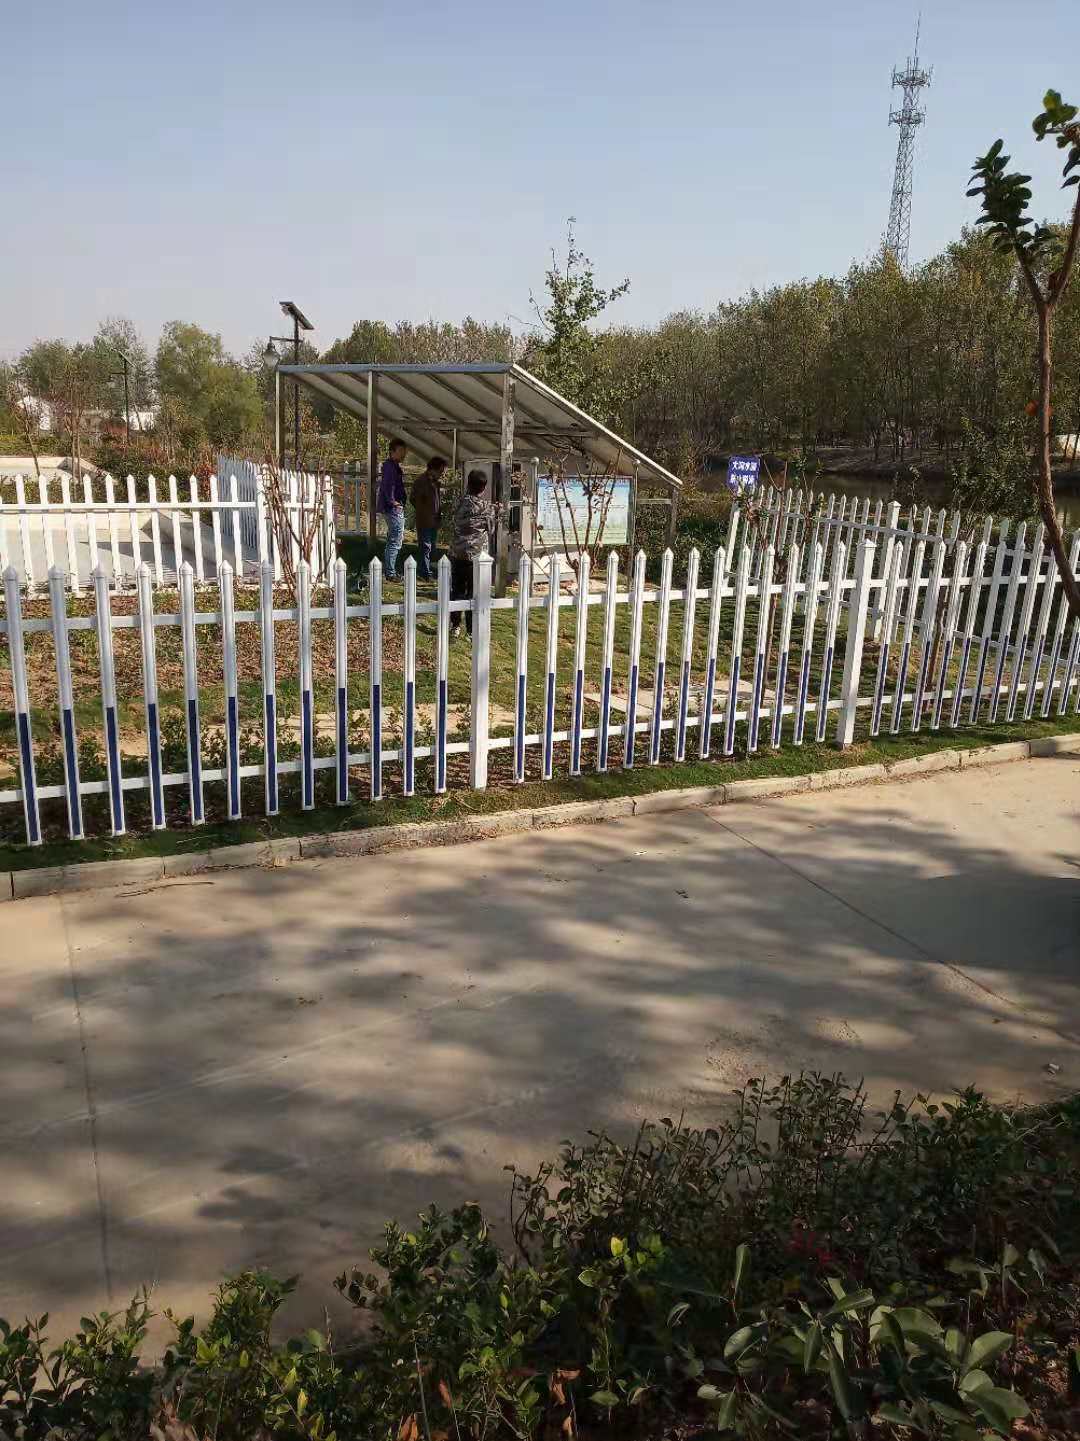 郴州太阳能微动力污水处理设备制造厂